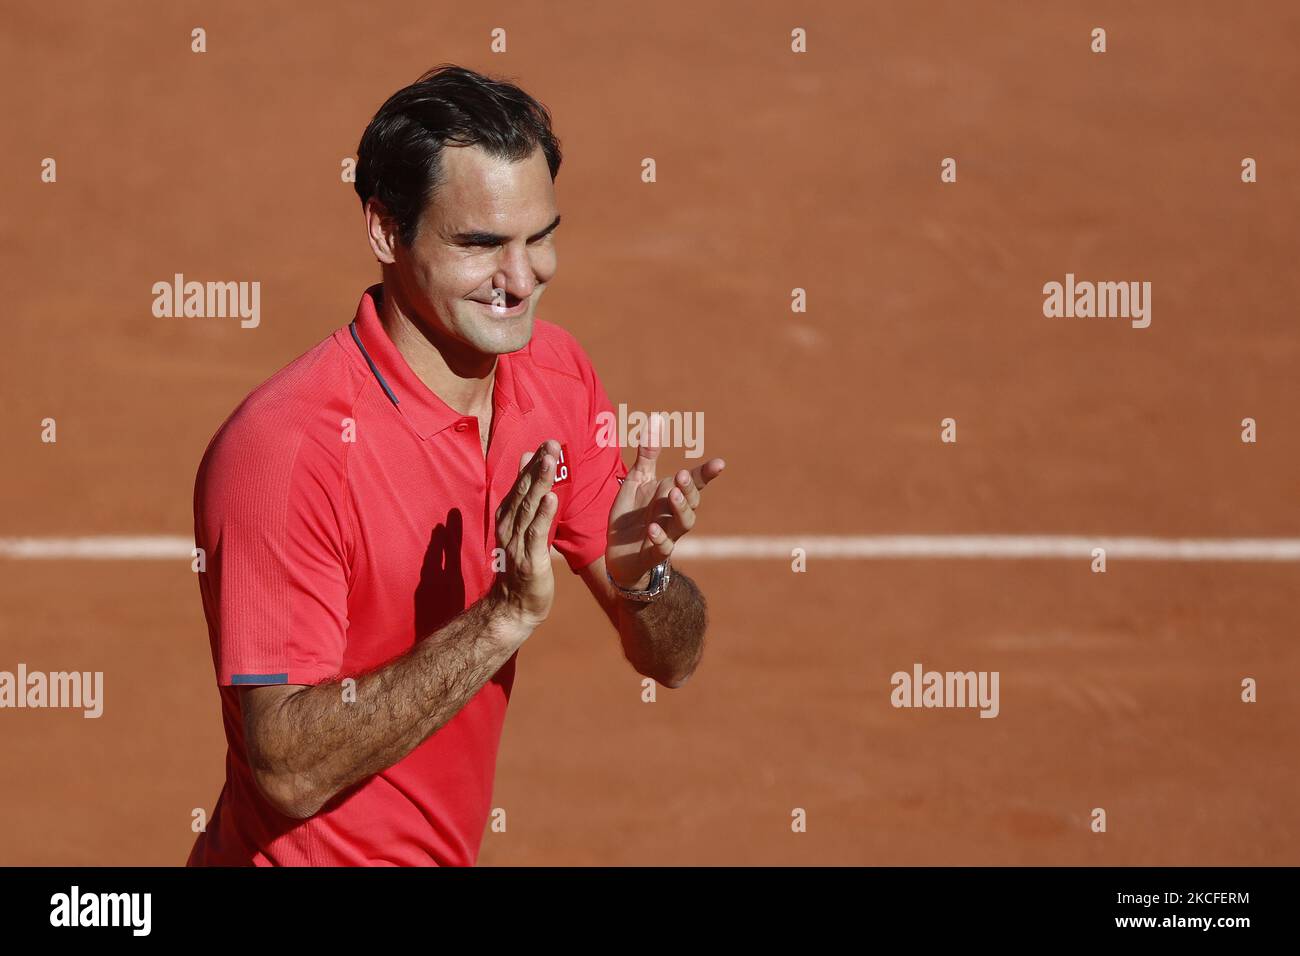 Roger Federer di Svizzera durante la sua vittoria del 6-2 6-4 6-3 su Dennis Istomin di Uzbekistan nel primo turno dei singoli maschili a Roland Garros il 31 maggio 2021 a Parigi (Francia).(Photo by Mehdi Taamallah/NurPhoto) Foto Stock